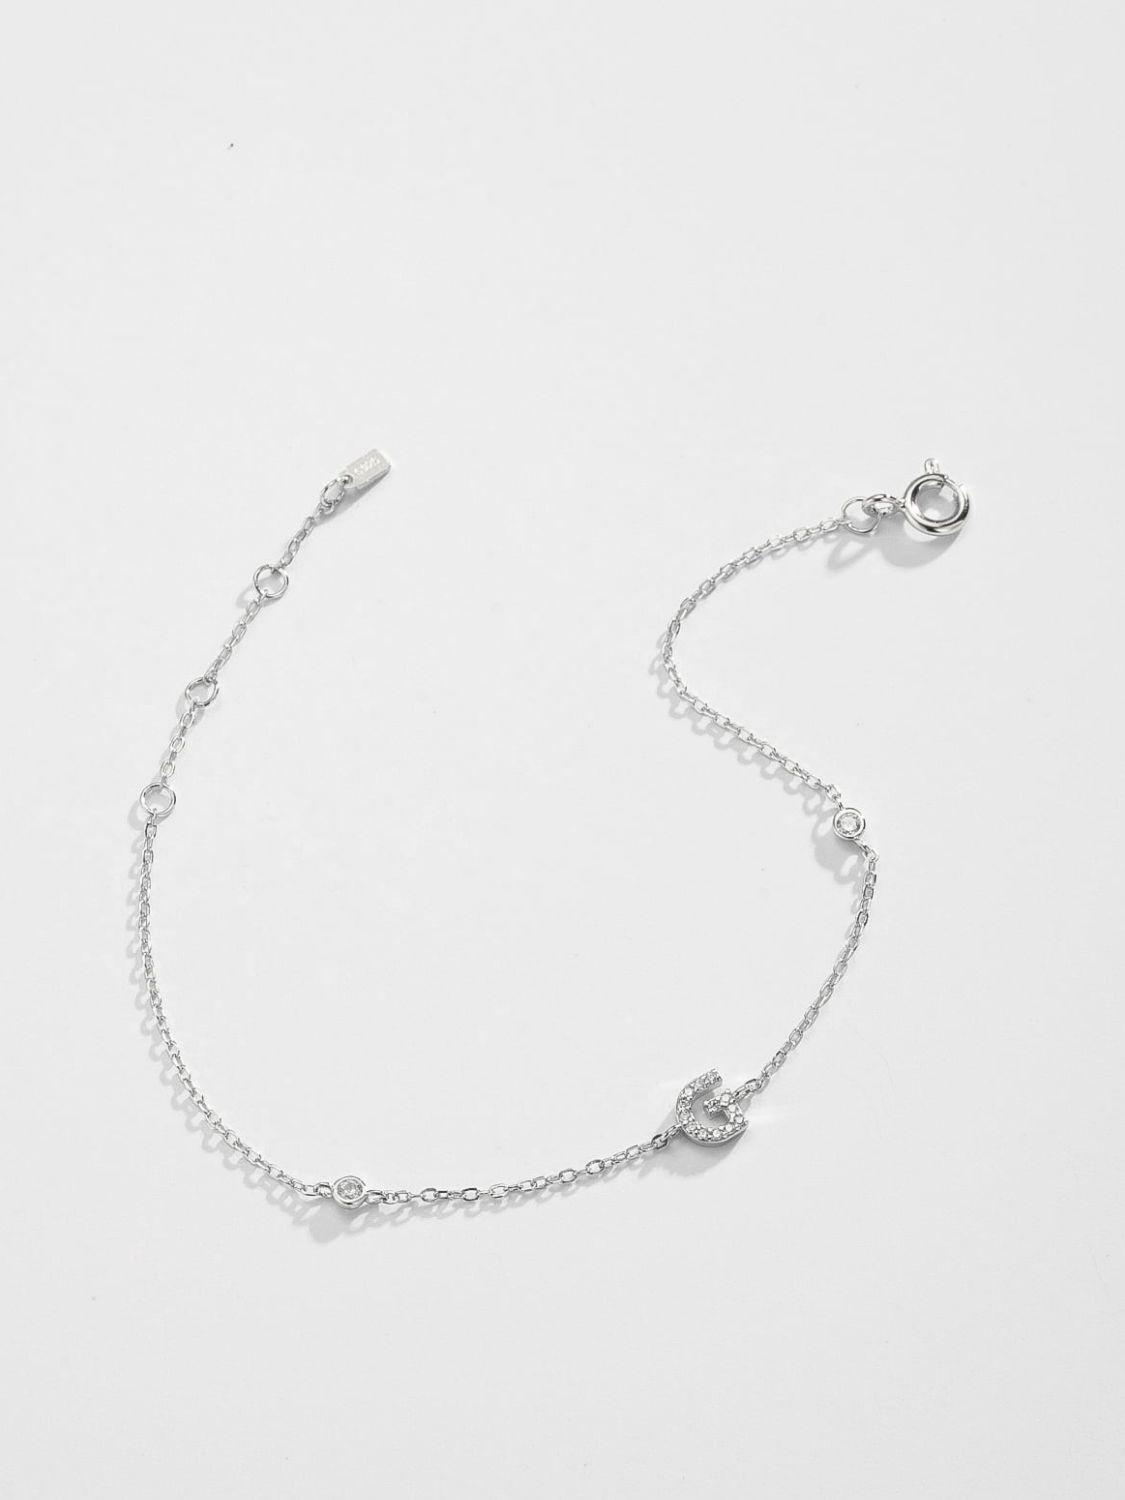 Zircon 925 Sterling Silver Bracelet - Women’s Jewelry - Bracelets - 6 - 2024